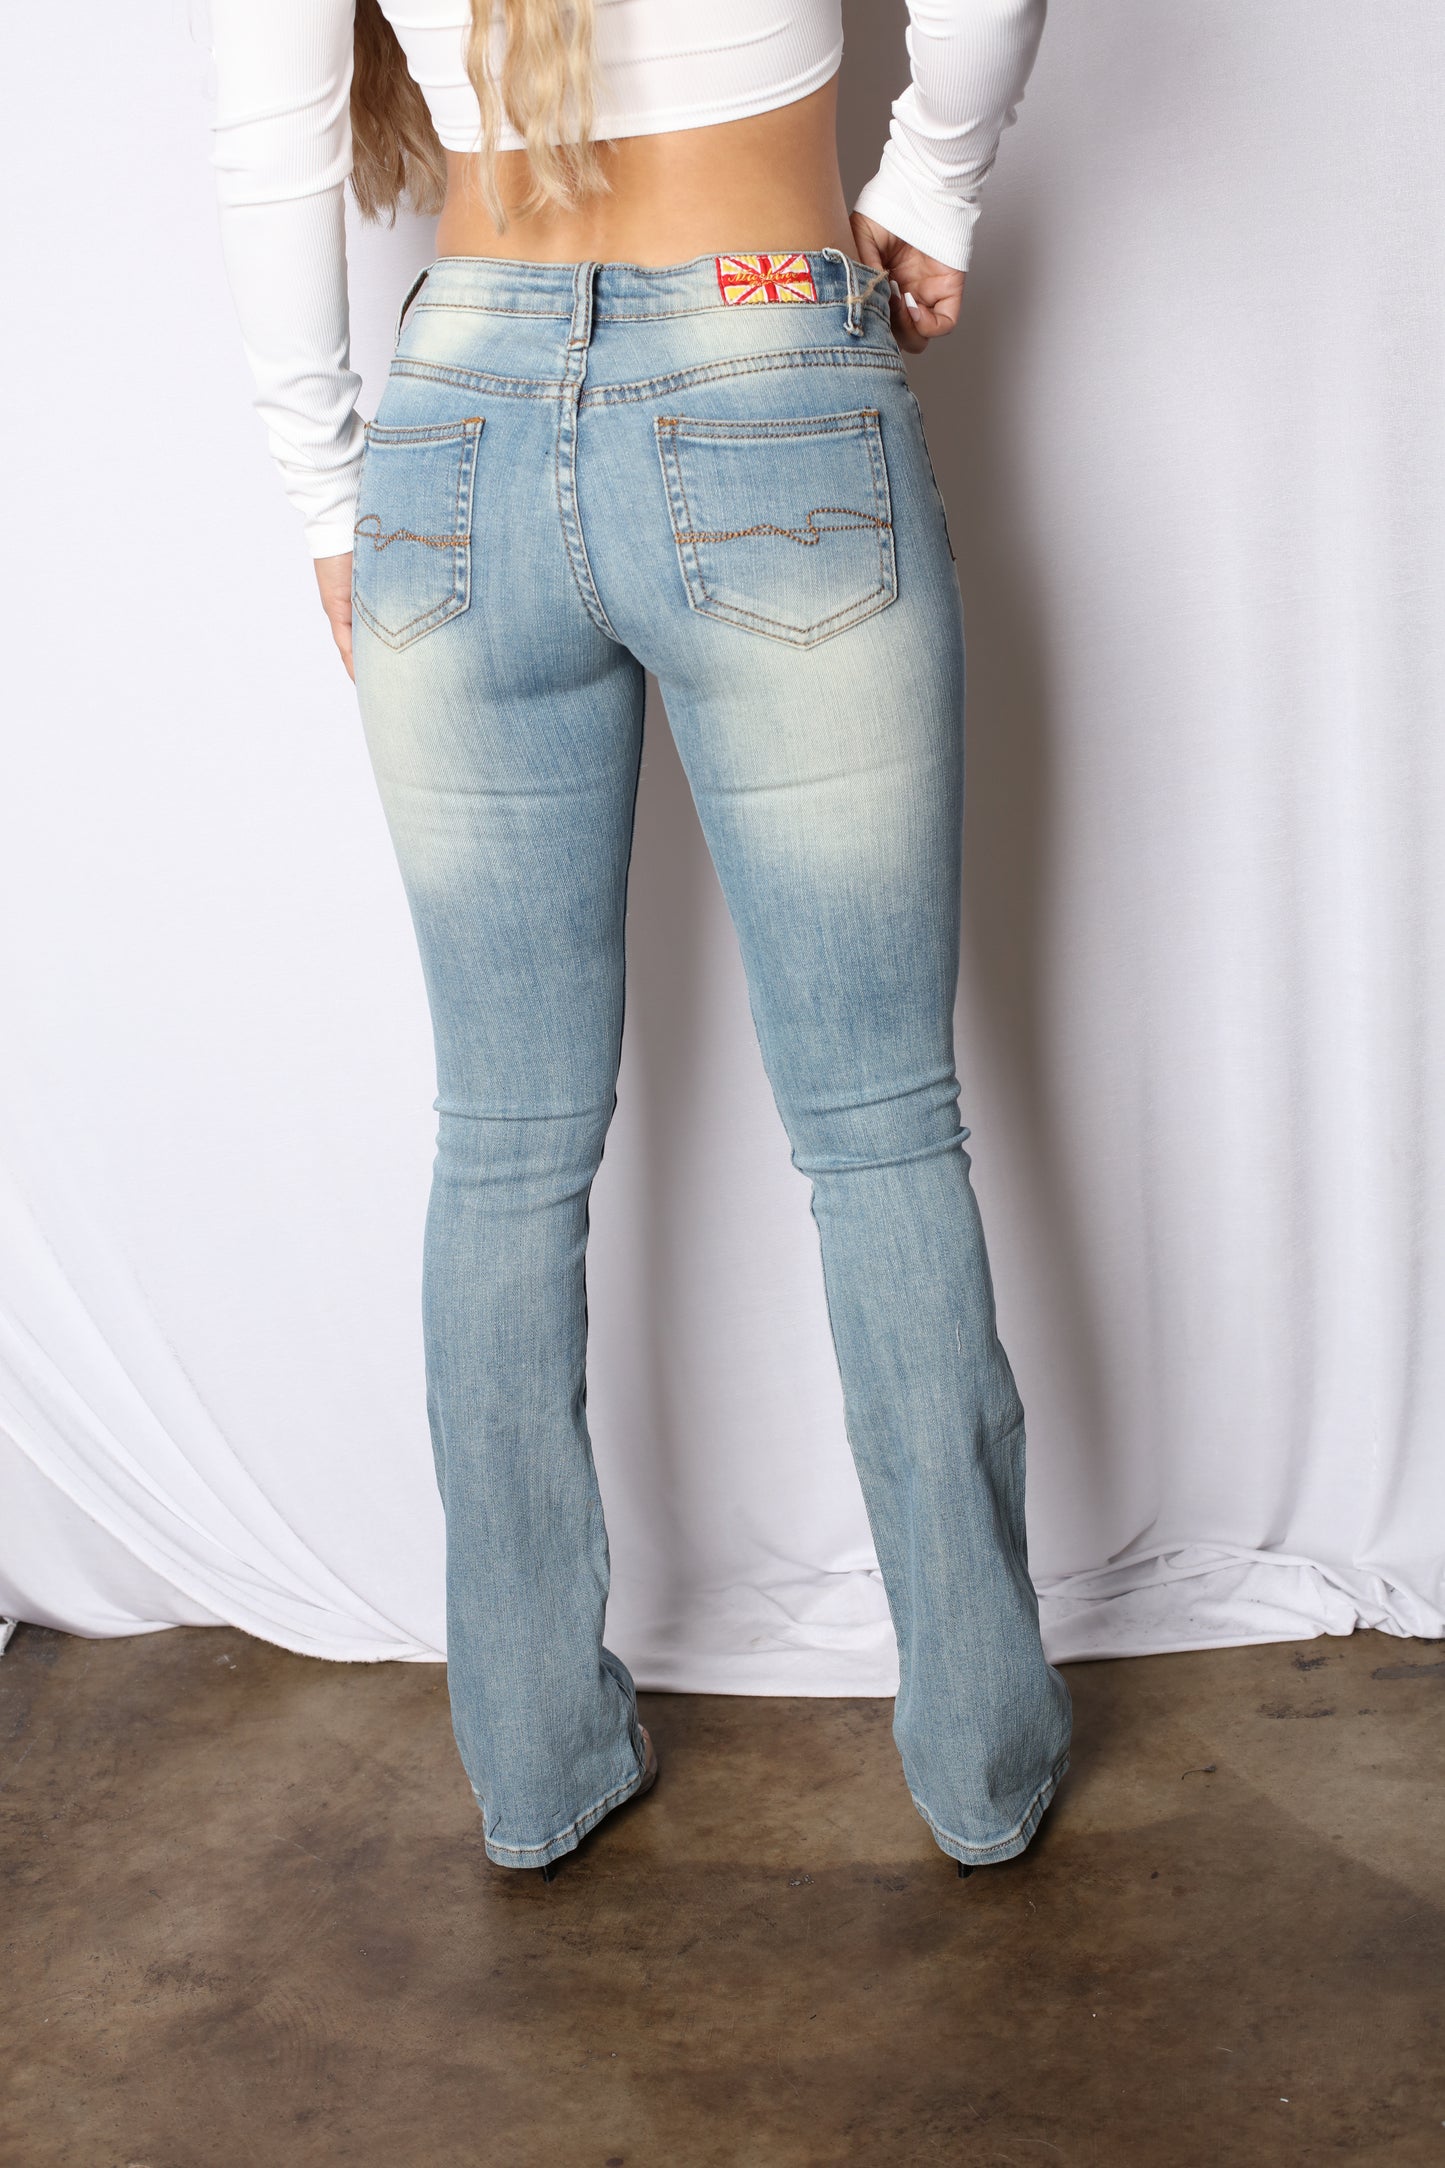 Paris Hilton Light 2000 Low Rise Boot Cut Jeans